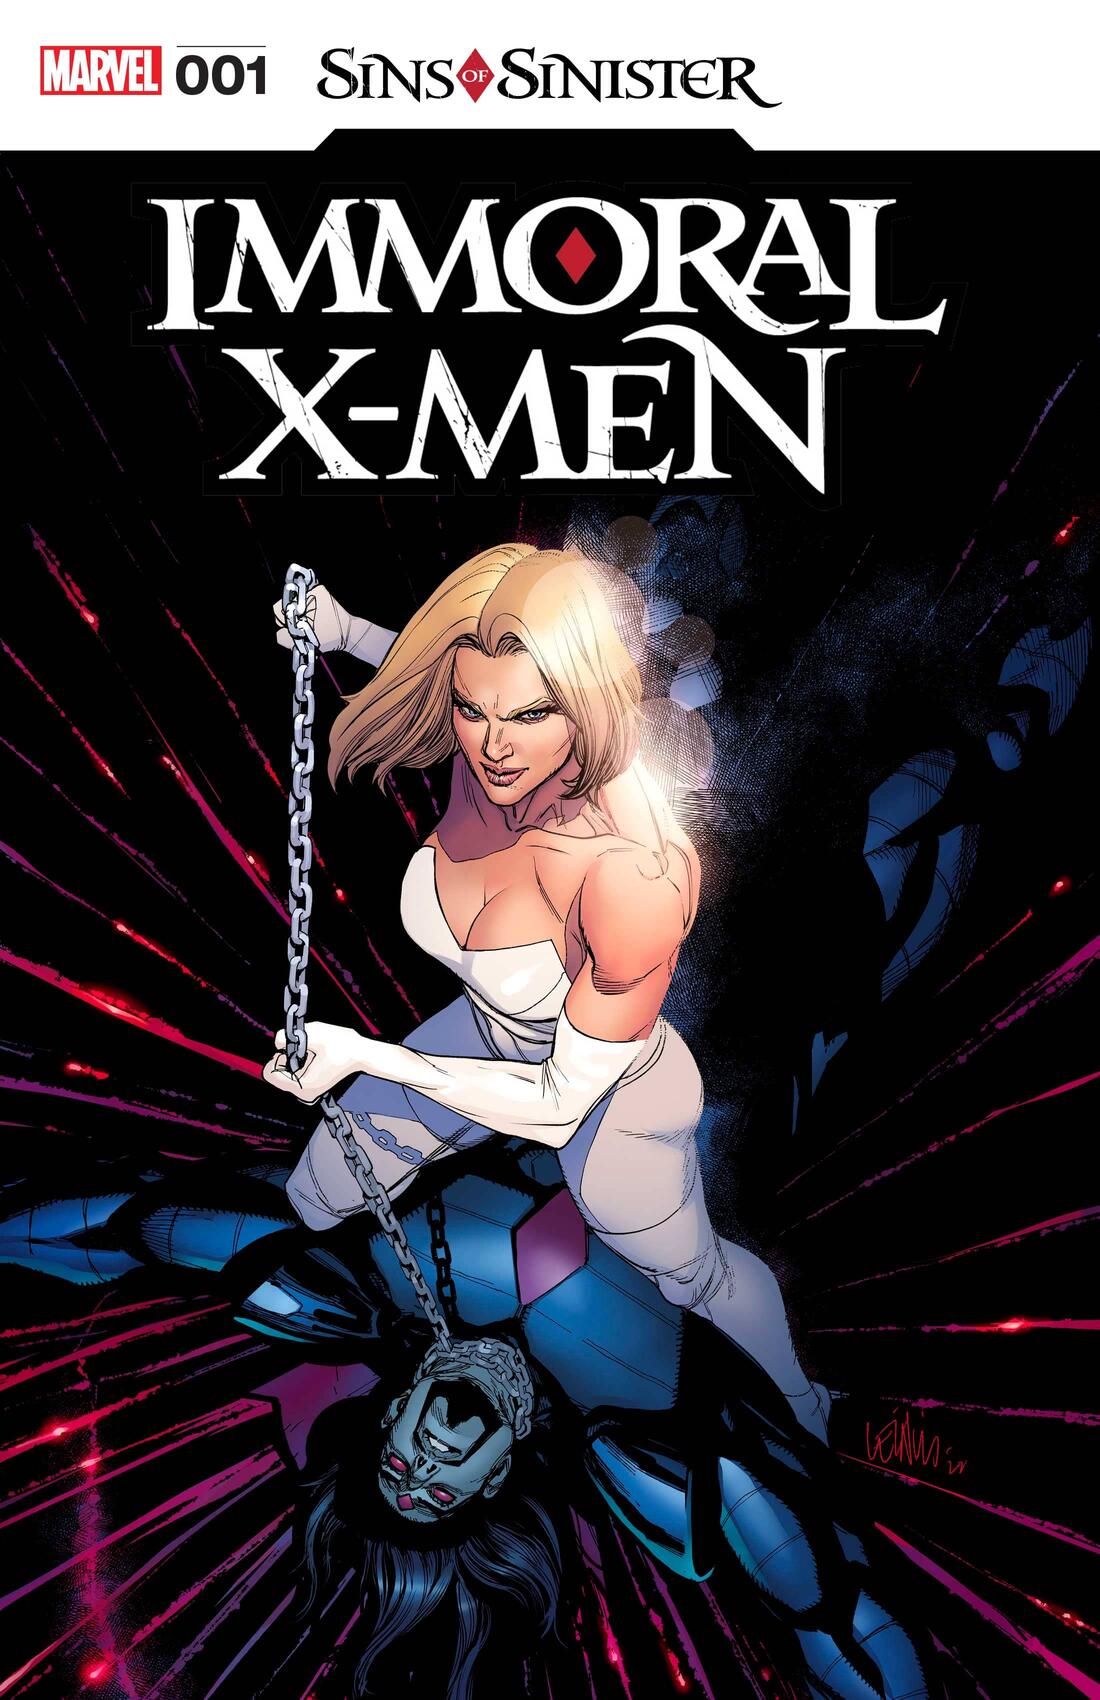 Quais são os Pecados de Sinistro - X-Men - Marvel Comics - Immoral X-Men #1 - Blog Farofeiros